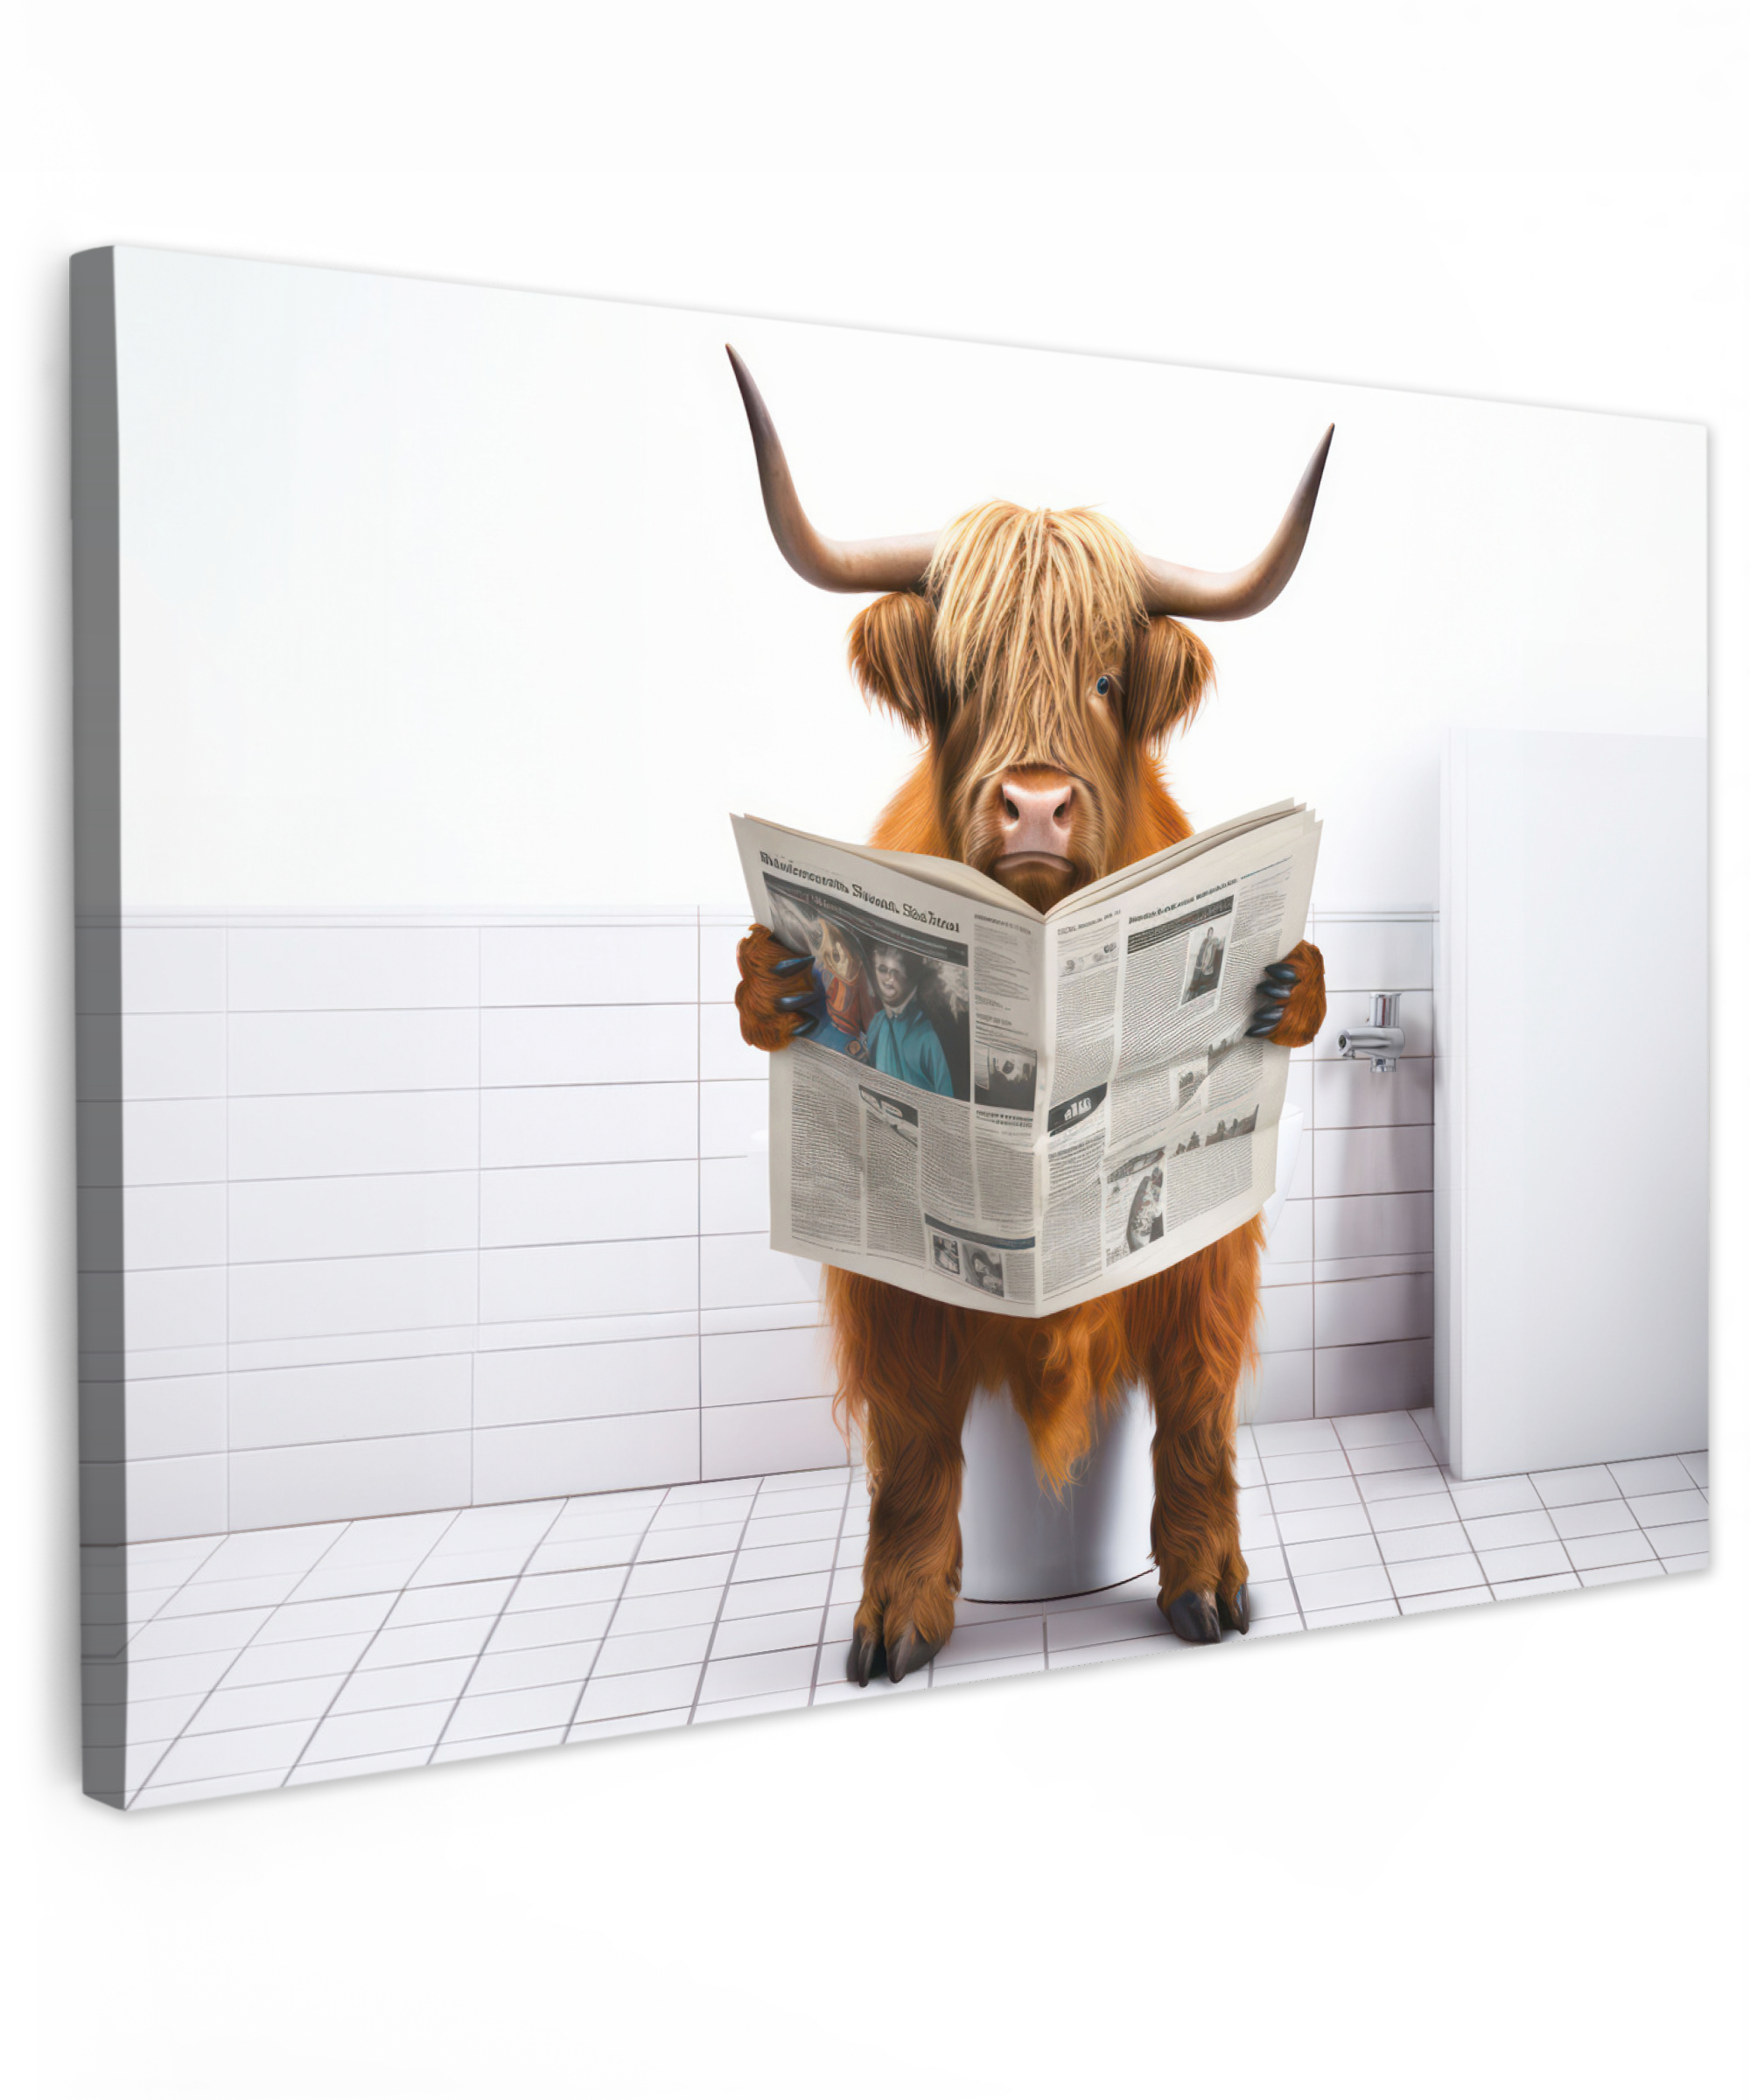 Leinwandbild - Schottischer Highlander - Zeitung - Toilette - WC - Weiß - Kuh